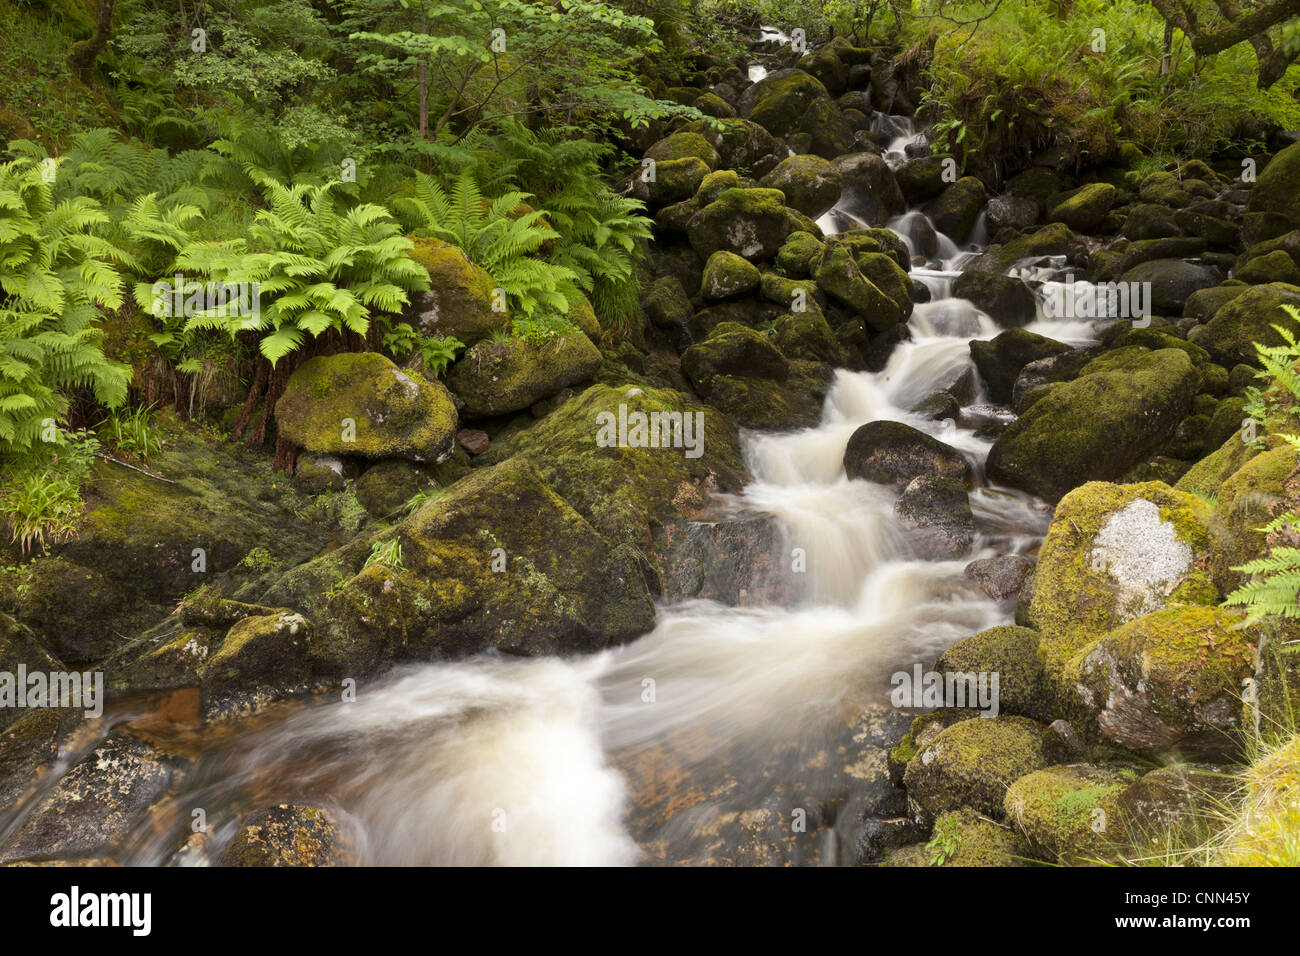 Cascades le ruisseau rocheux de Woodland, Ecosse, juin Banque D'Images